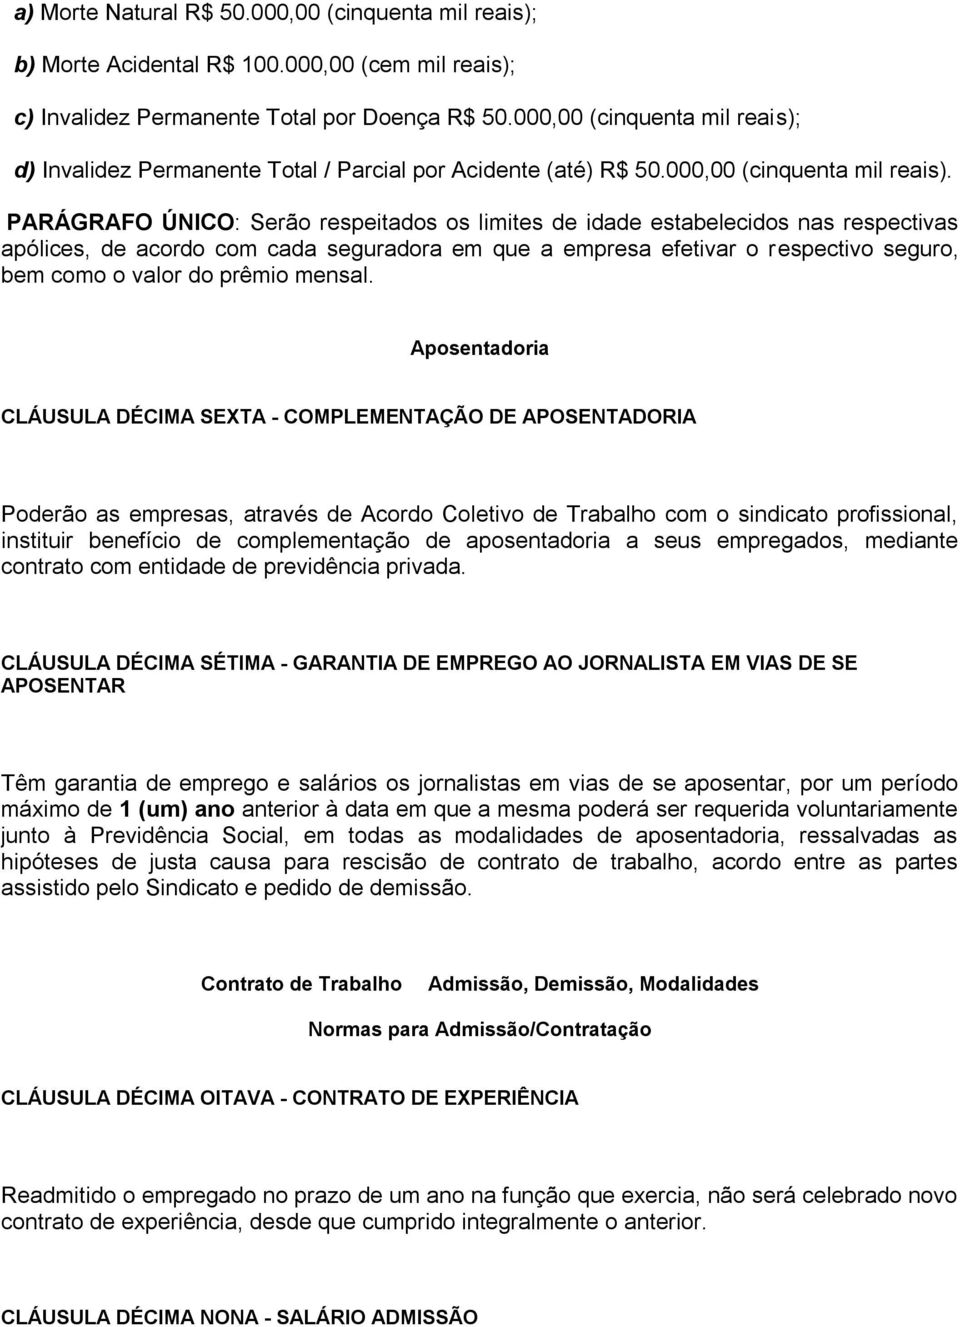 d) Invalidez Permanente Total / Parcial por Acidente (até) R$ 50.000,00 (cinquenta mil reais).